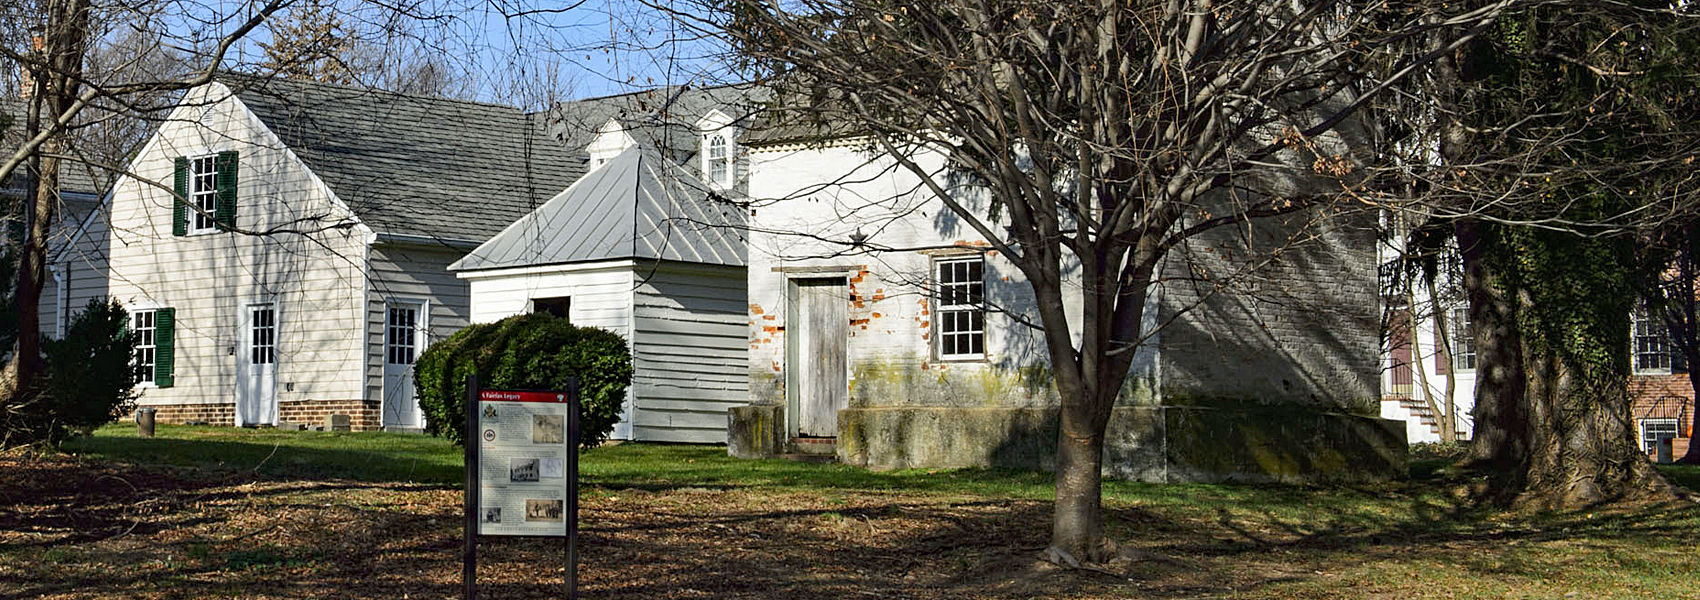 Ash Grove historic house